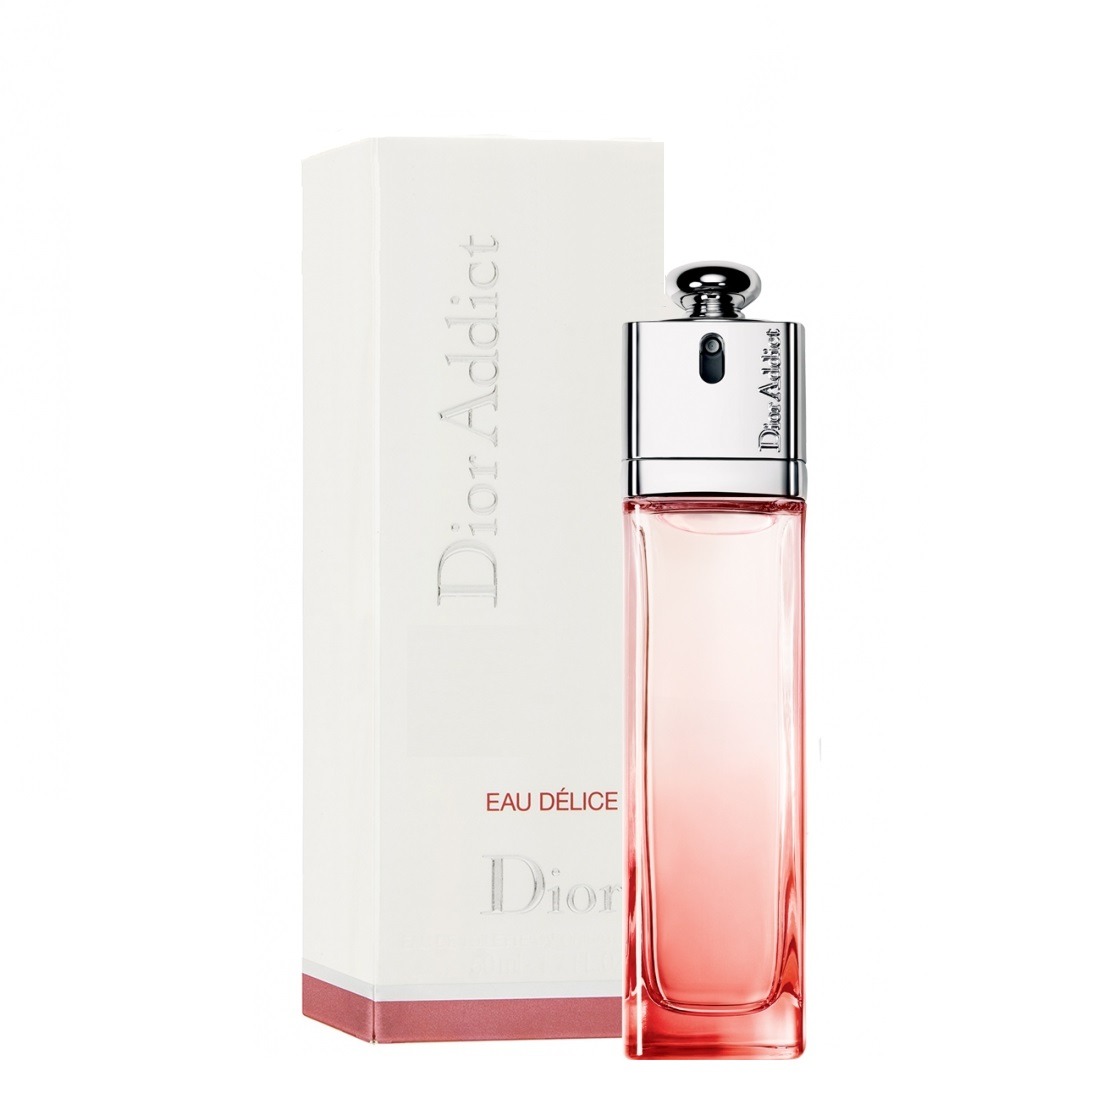 น้ำหอมผู้หญิง Dior Addict Eau Delice Christian Dior for women 100ml. สีแดงรุ่น 2013